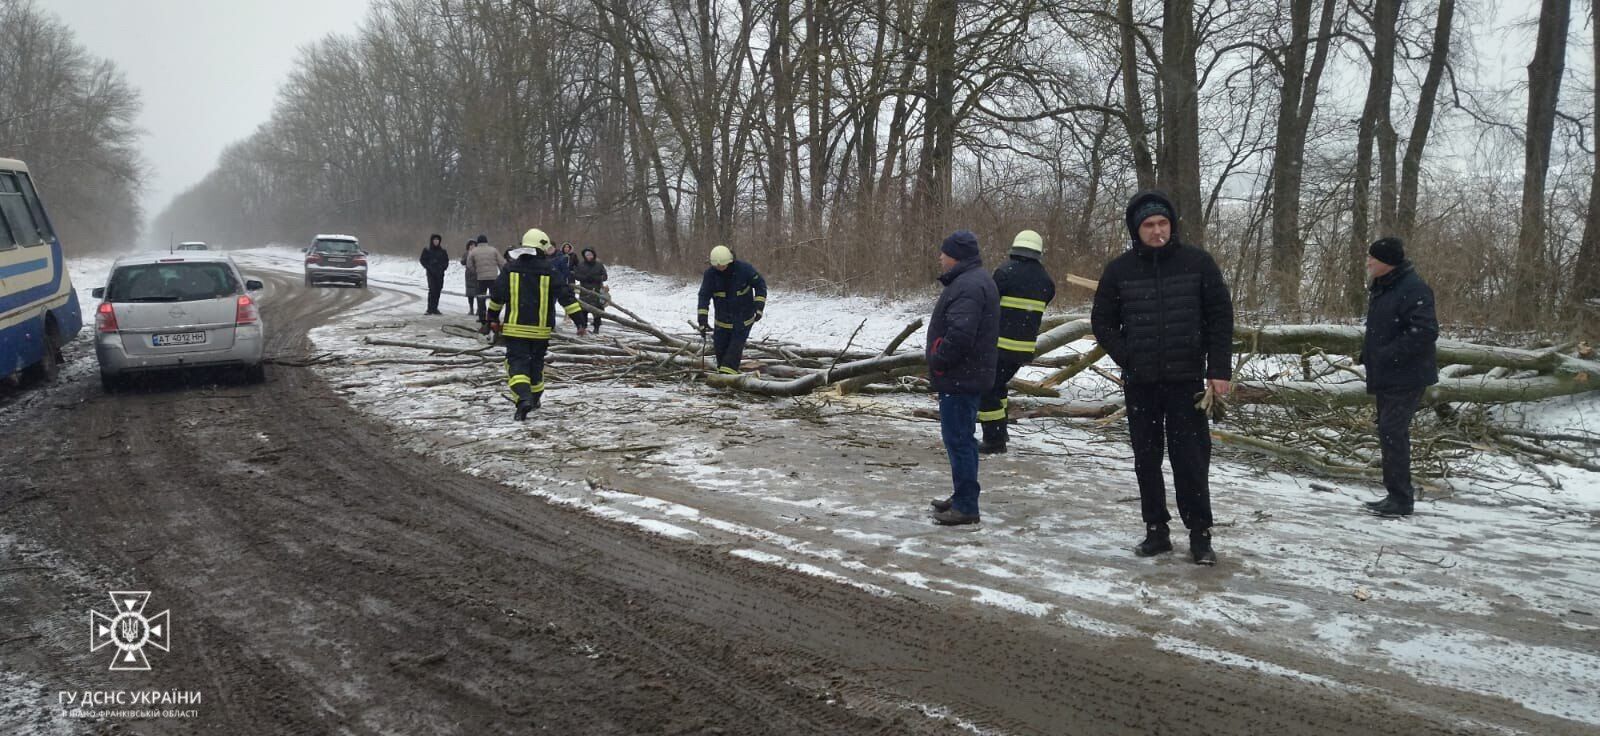 Часть Украины замело снегом: ситуация на дорогах усложнена, дальше будет хуже. Видео